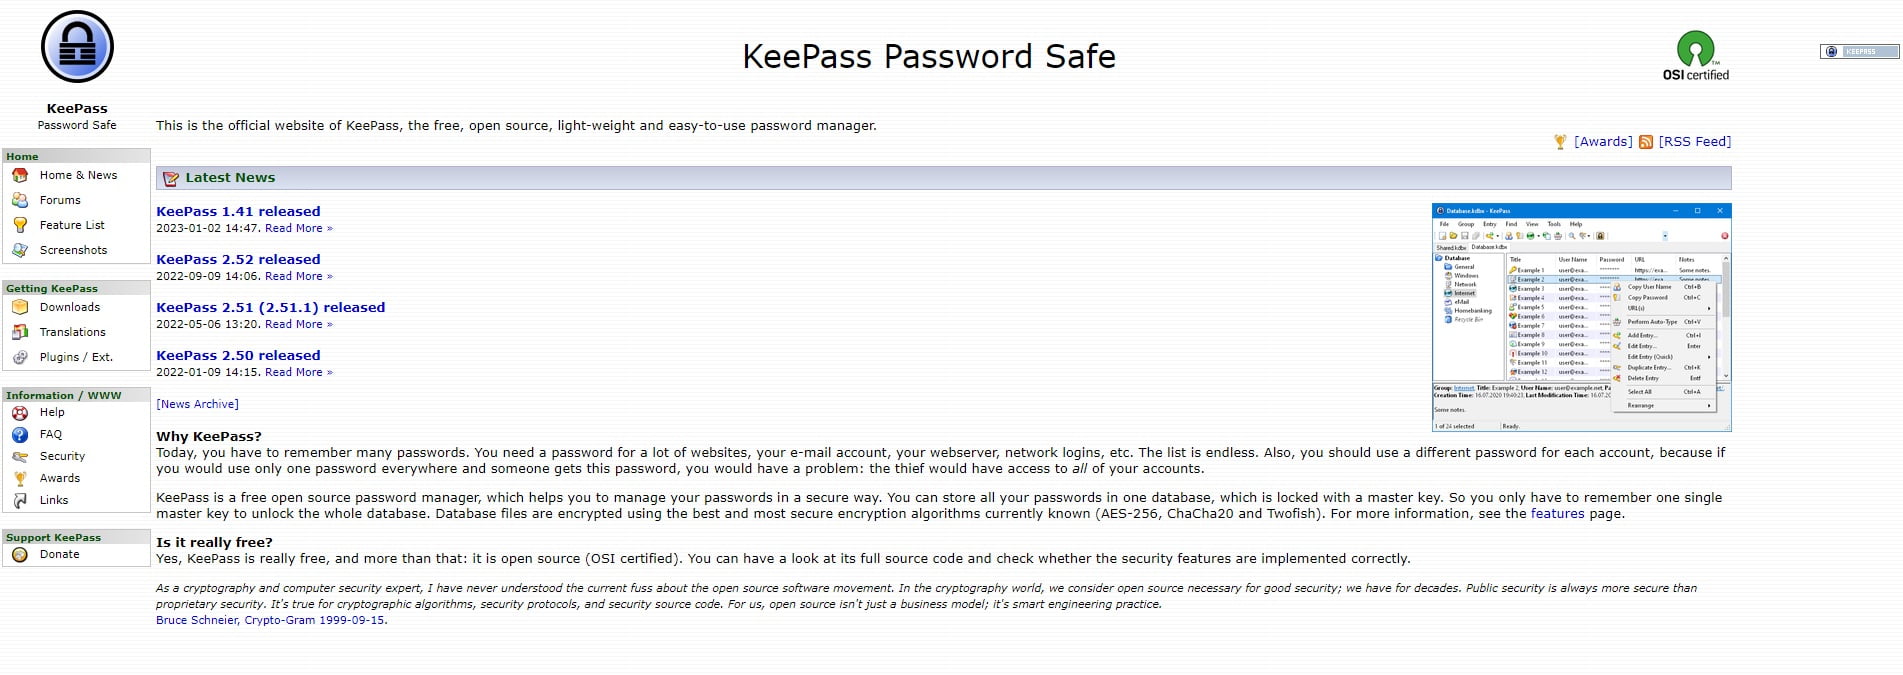 keepass-password-safe